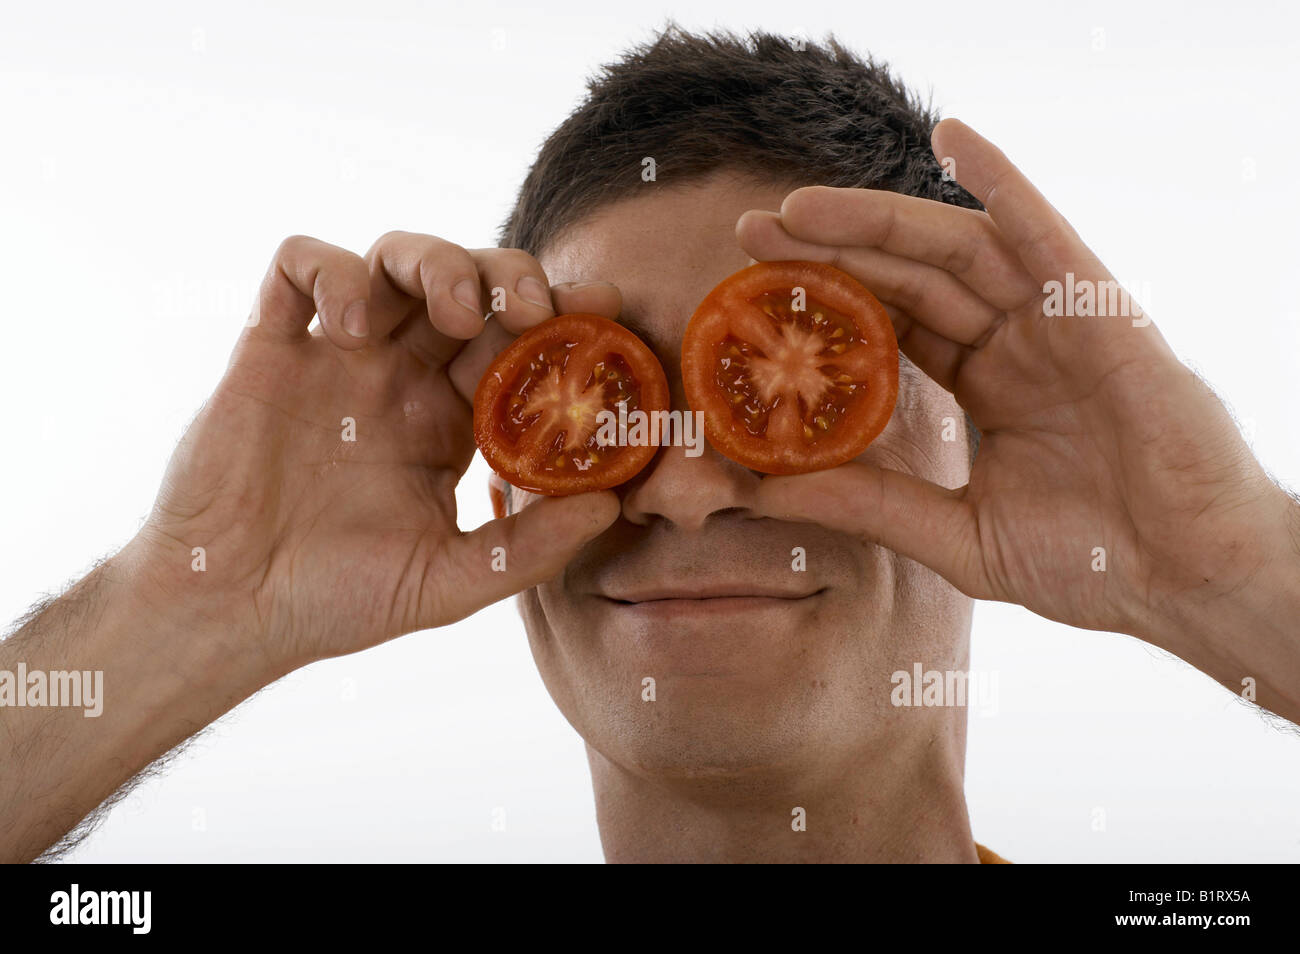 Man holding tomatoes devant ses yeux, la visualisation d'une figure de style allemand Banque D'Images